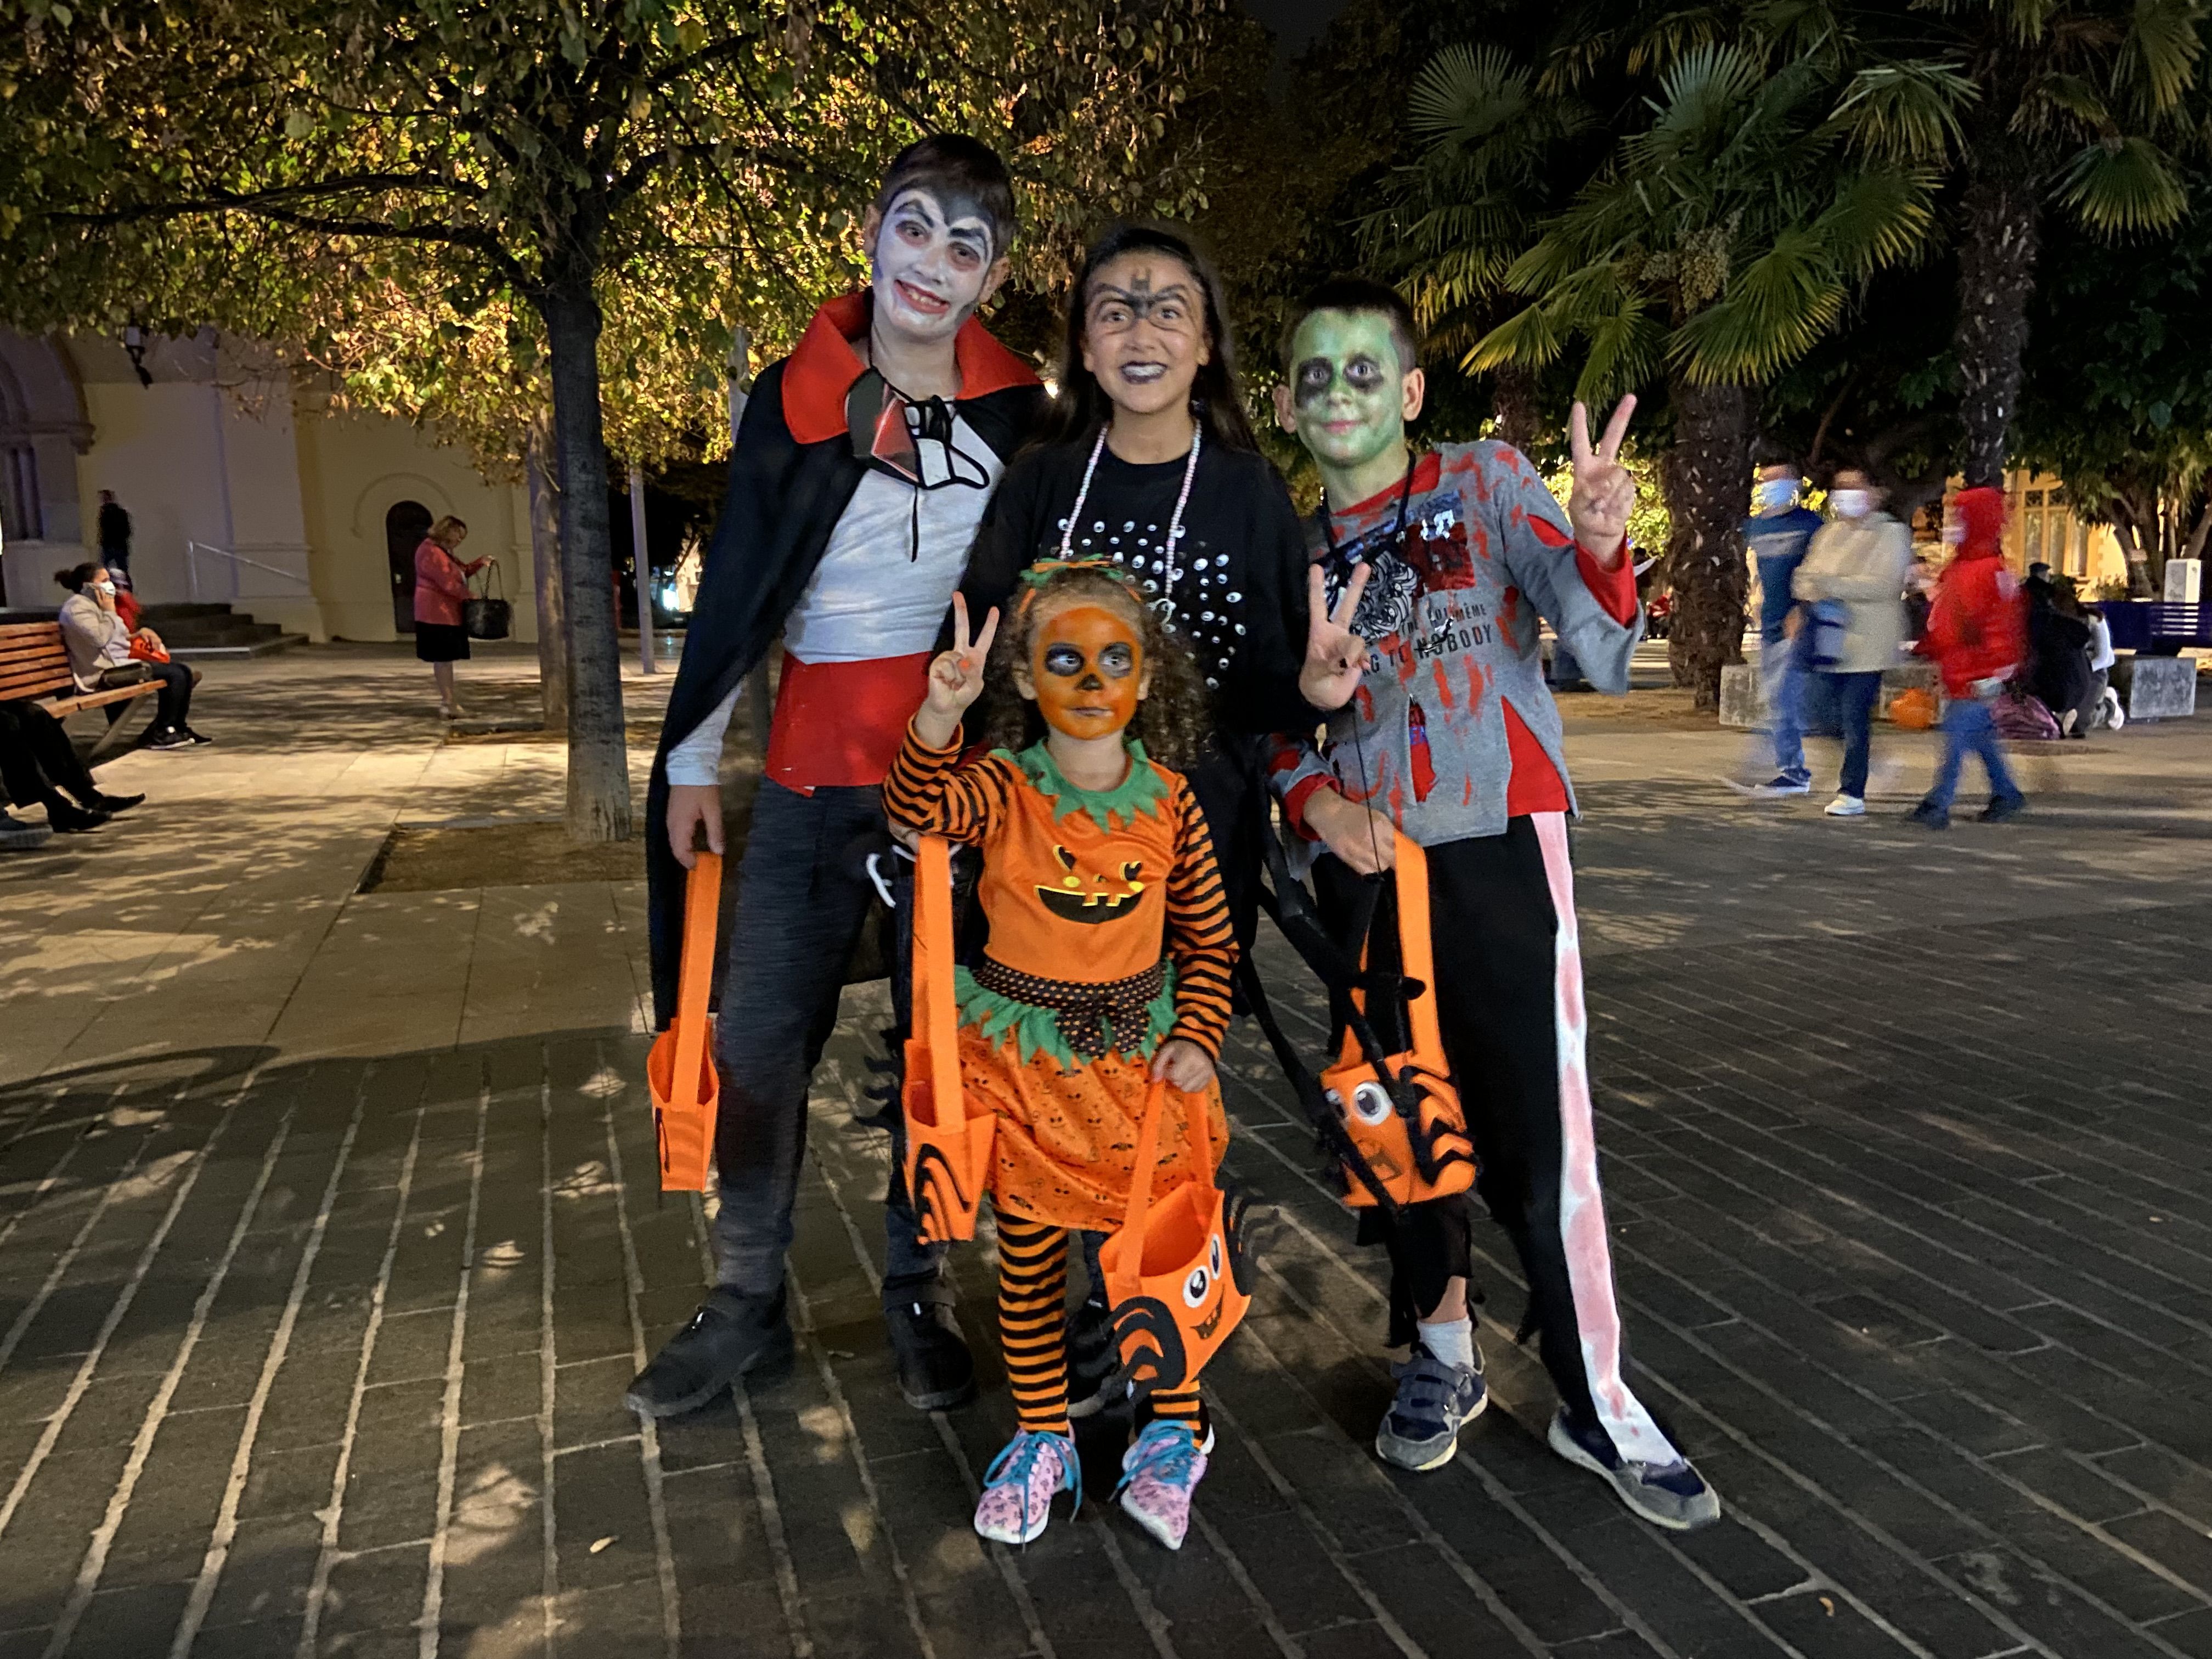 Nens veïns de Cerdanyola disfressats la nit de Halloween. FOTO: Nora Muñoz Otero